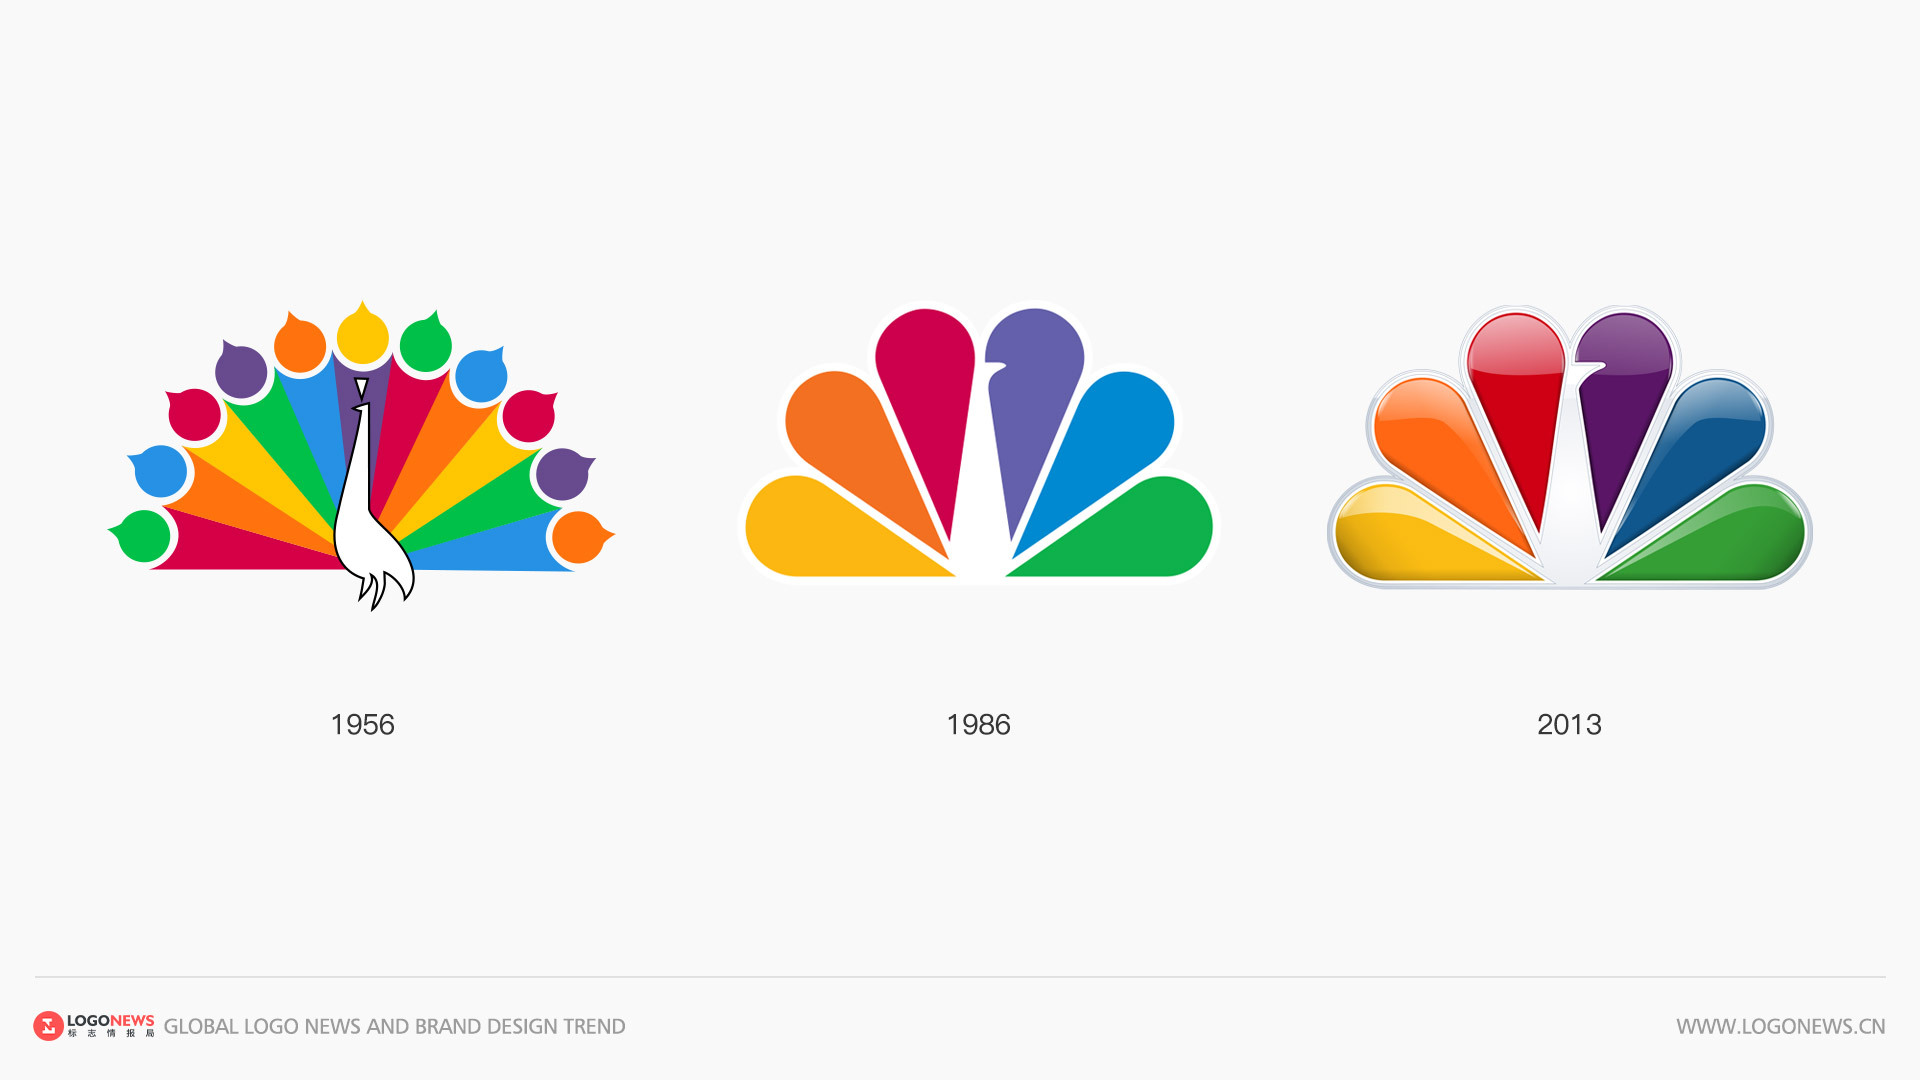 美國國家廣播公司NBC 更新彩色孔雀LOGO，賦予更鮮豔明亮的色彩 2